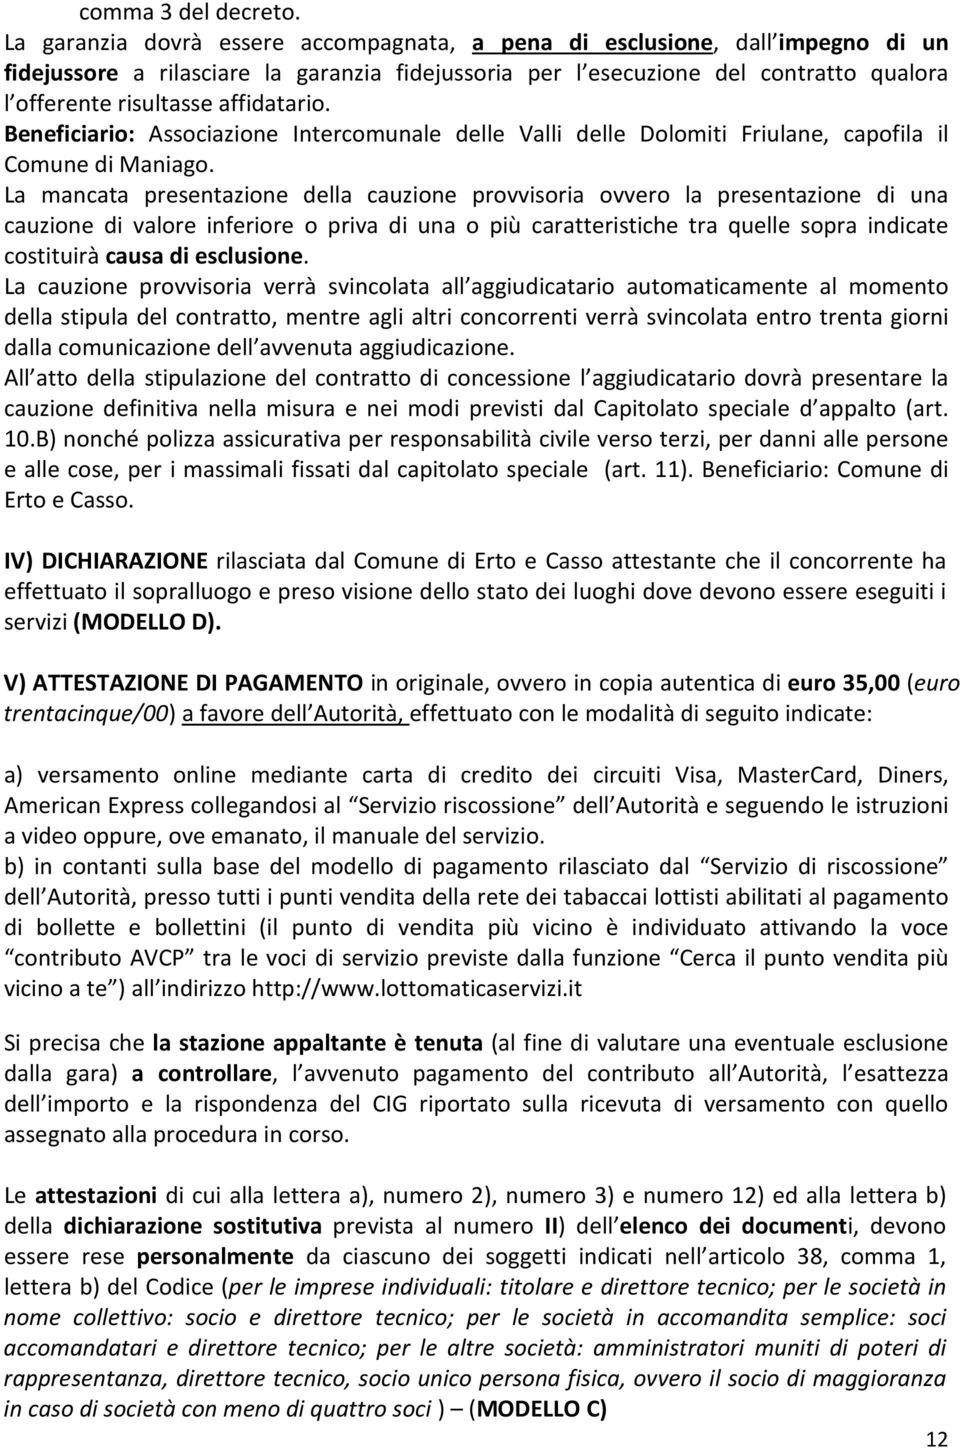 affidatario. Beneficiario: Associazione Intercomunale delle Valli delle Dolomiti Friulane, capofila il Comune di Maniago.